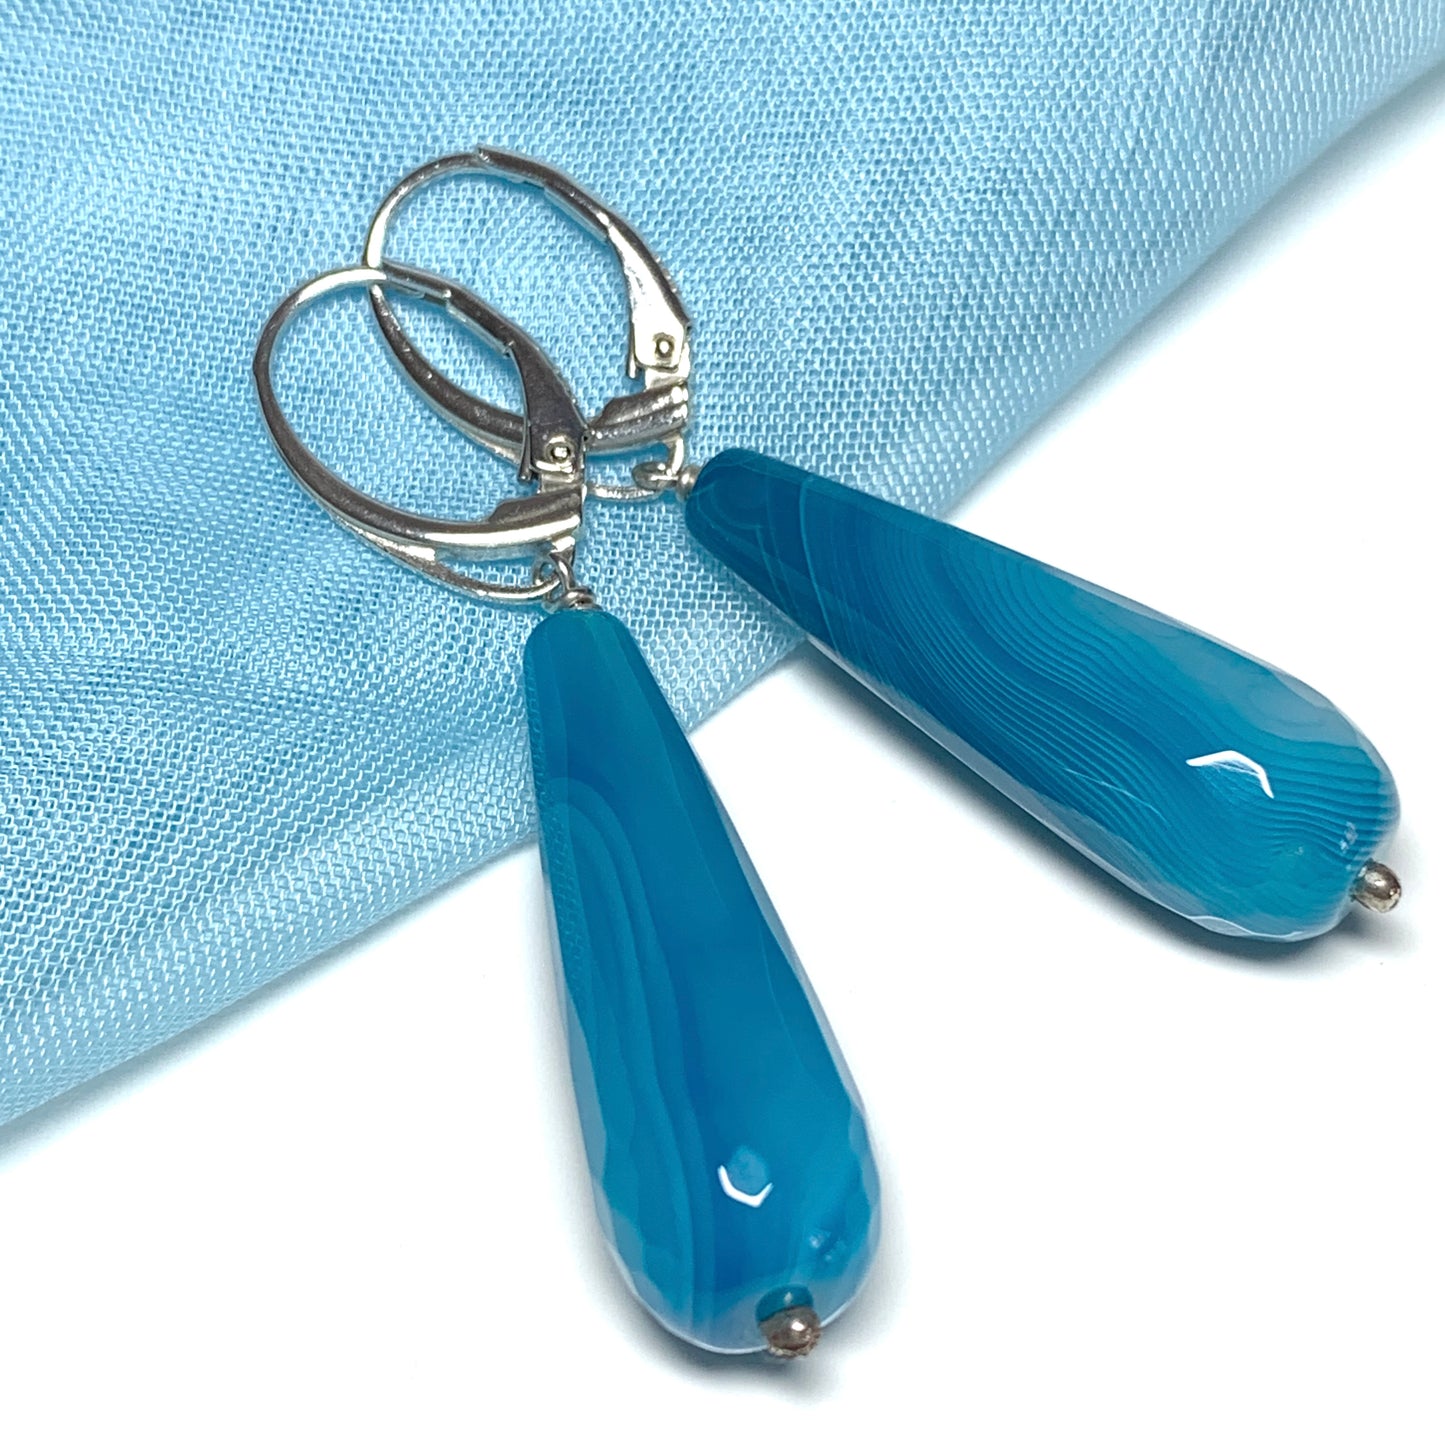 Light blue agate teardrop shaped long drop earrings